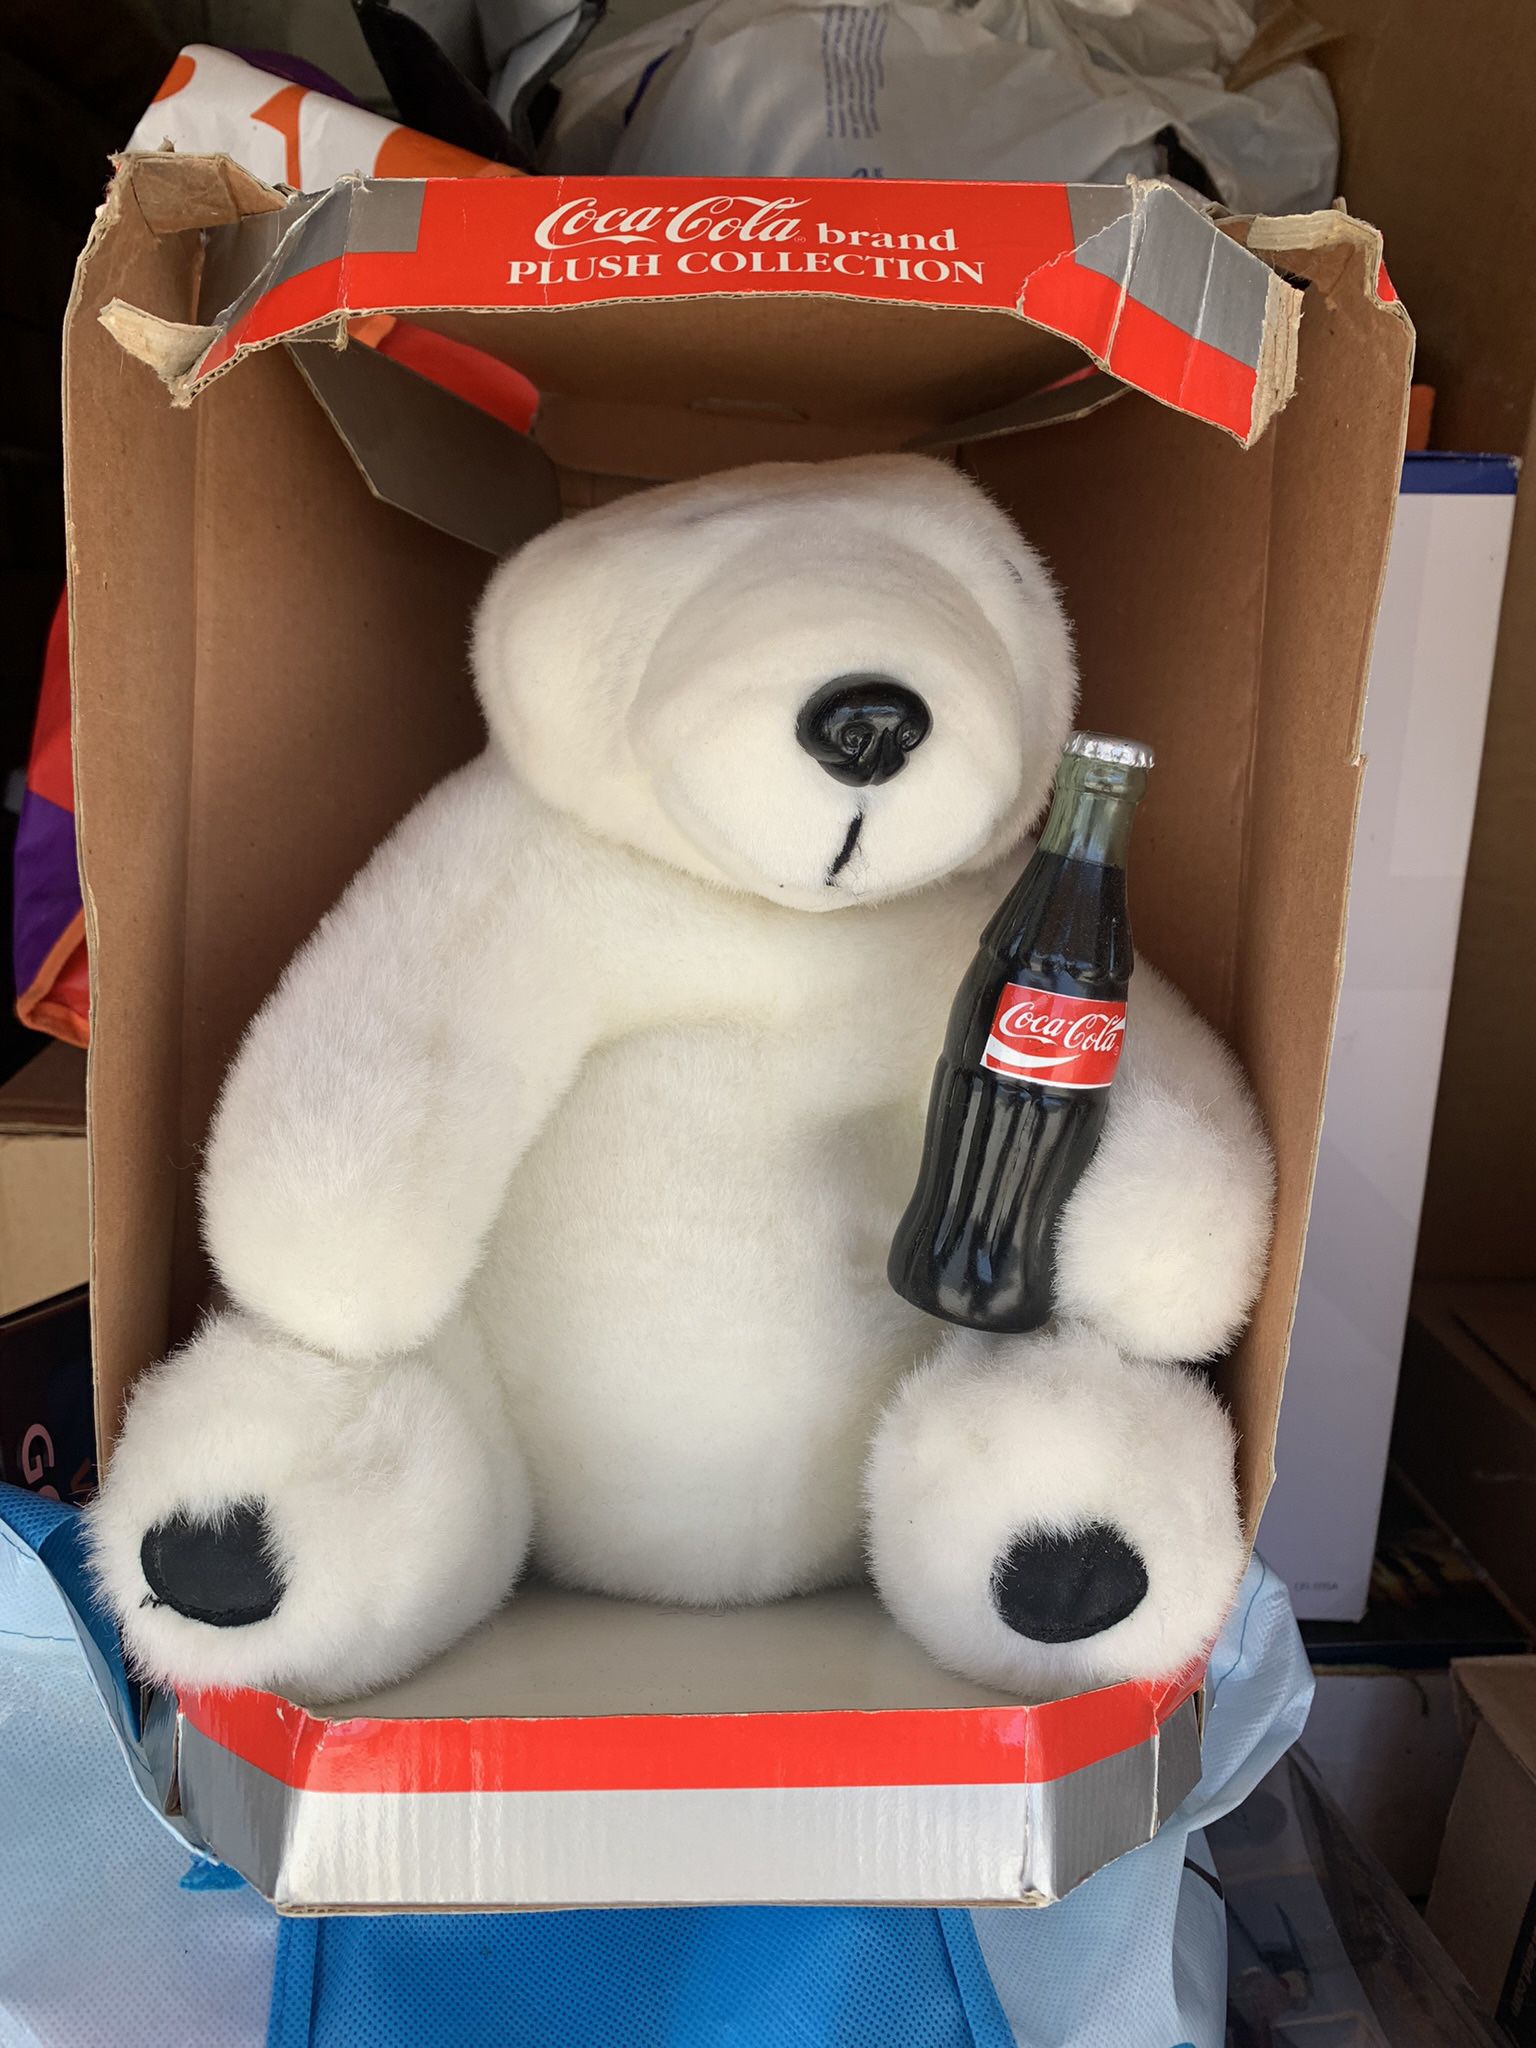 Coca Cola Bear 1993 Plush Collection